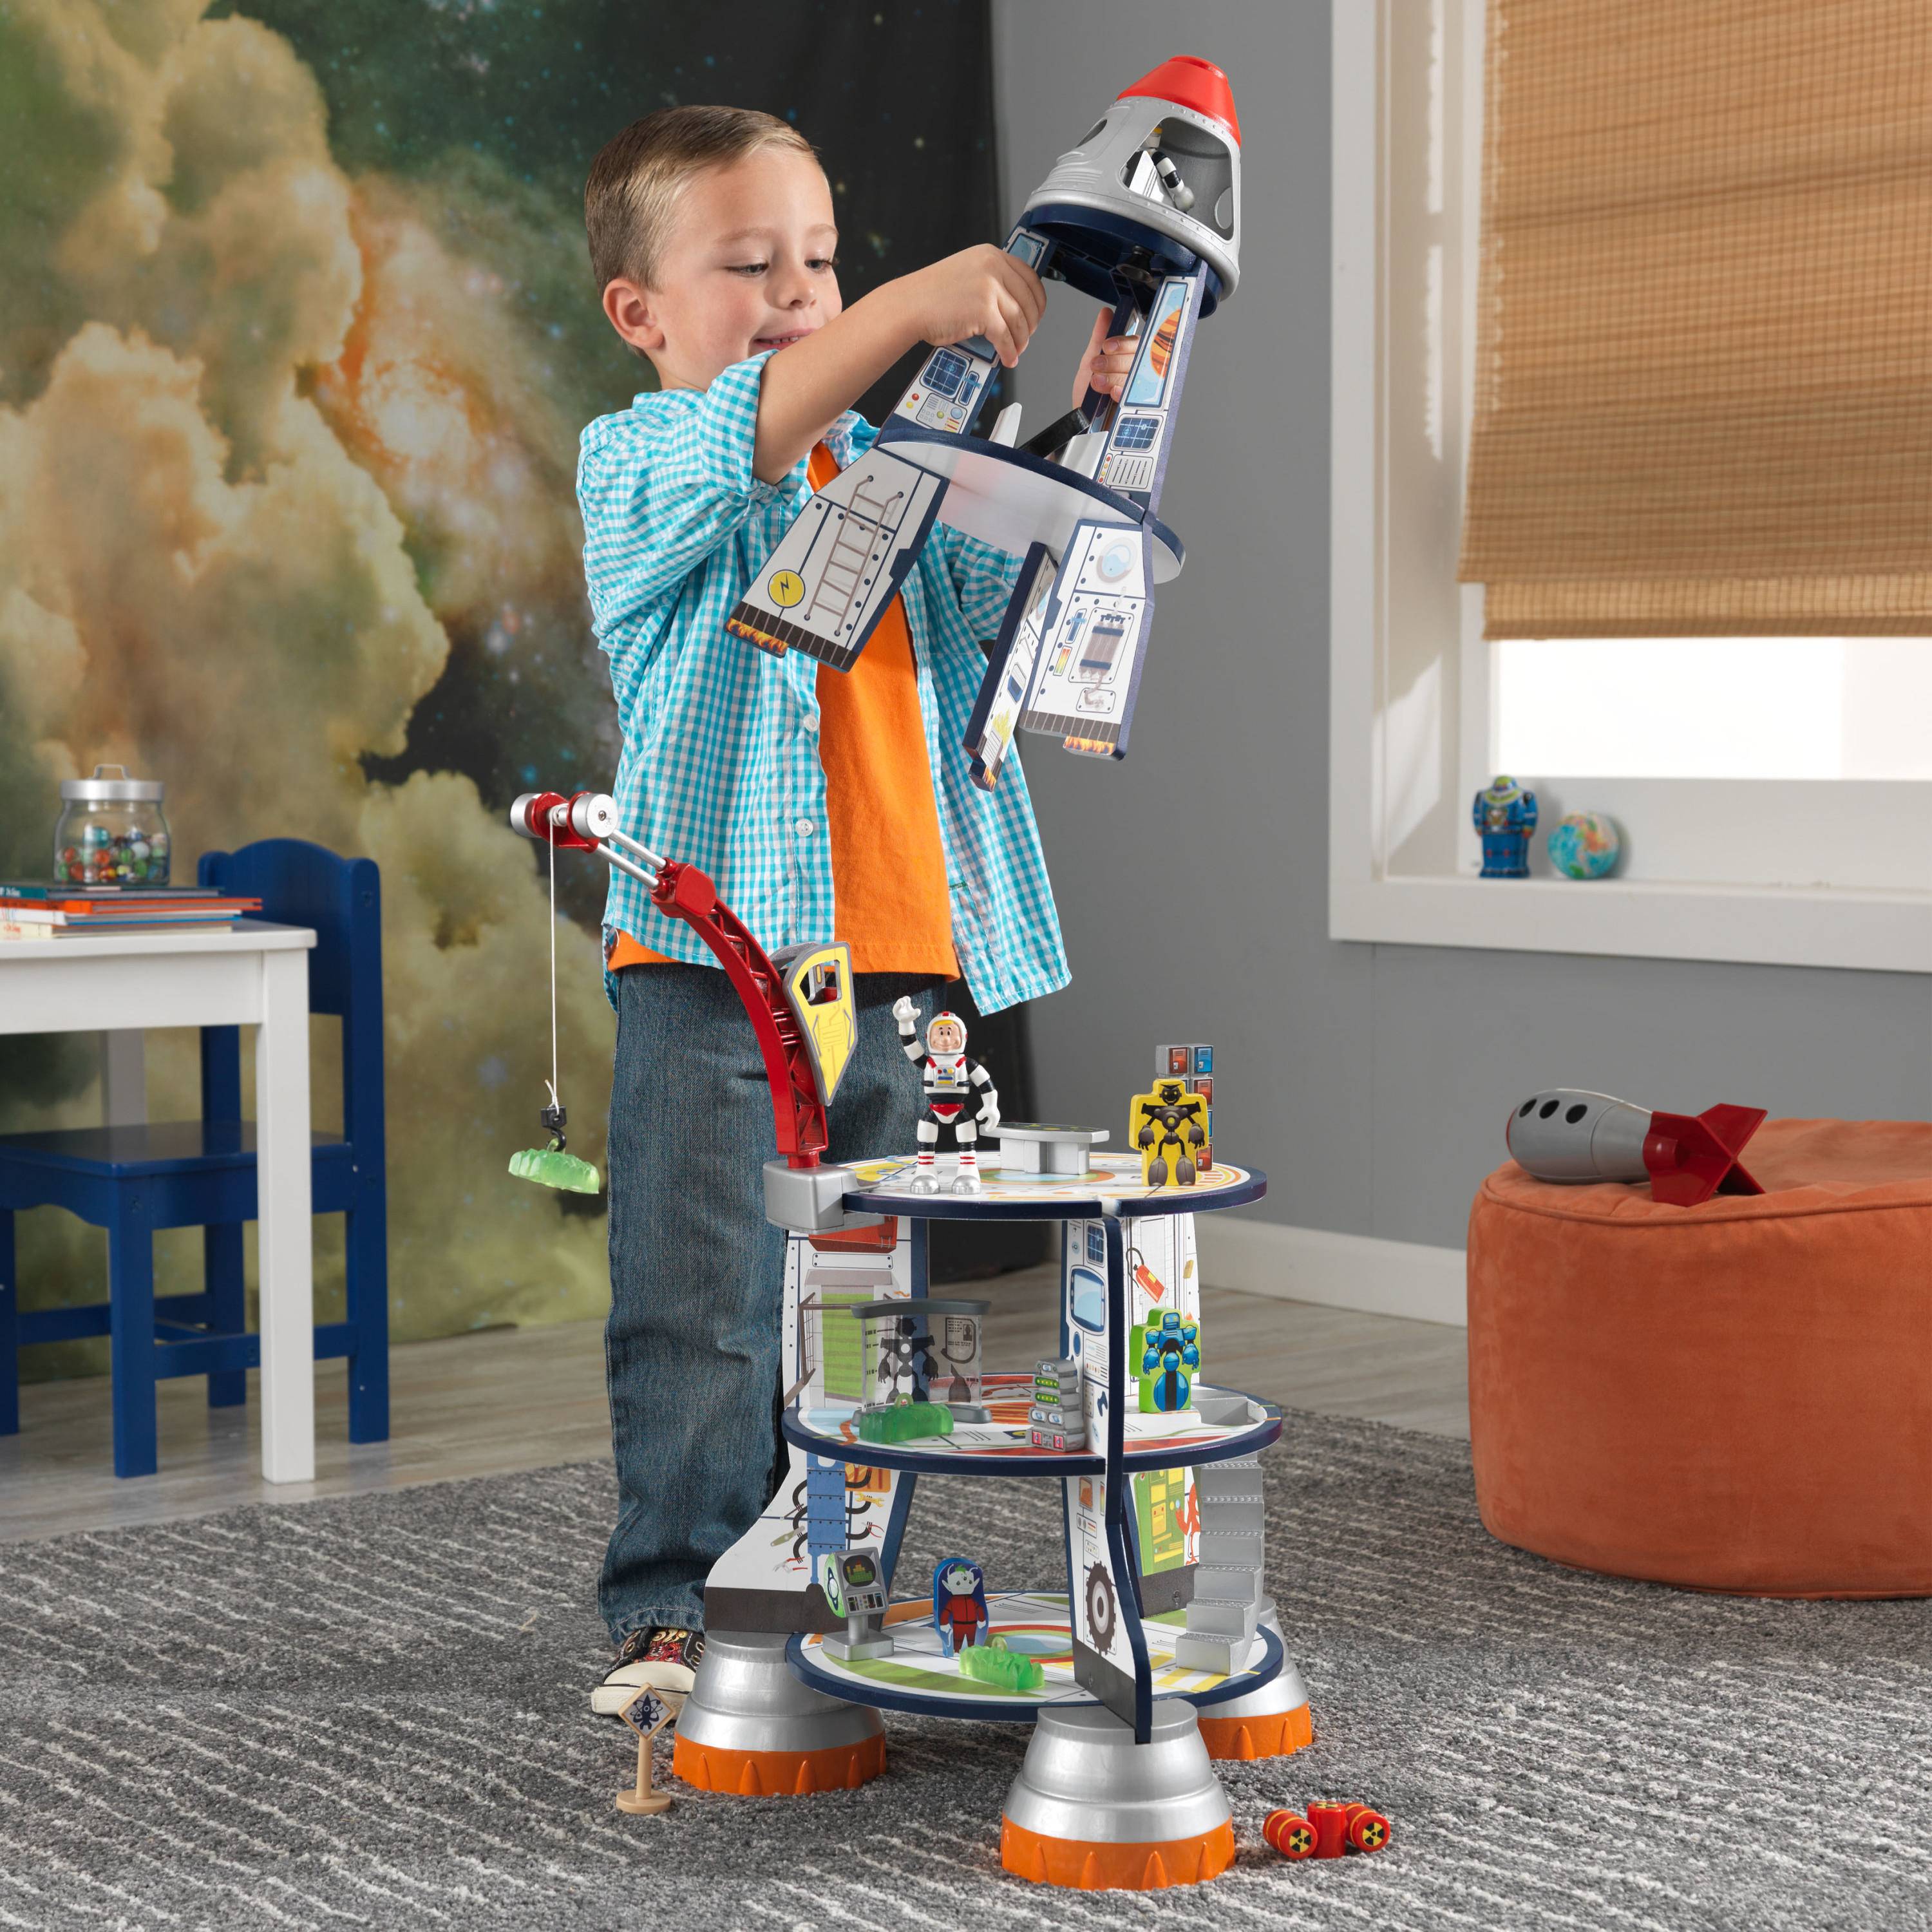 Купить подарок мальчику 10. Игровой набор kidkraft космический корабль 63443_ke. Игровой набор "космический корабль" (Rocket ship). Кидкрафт ракета. Необычные игрушки для мальчиков.